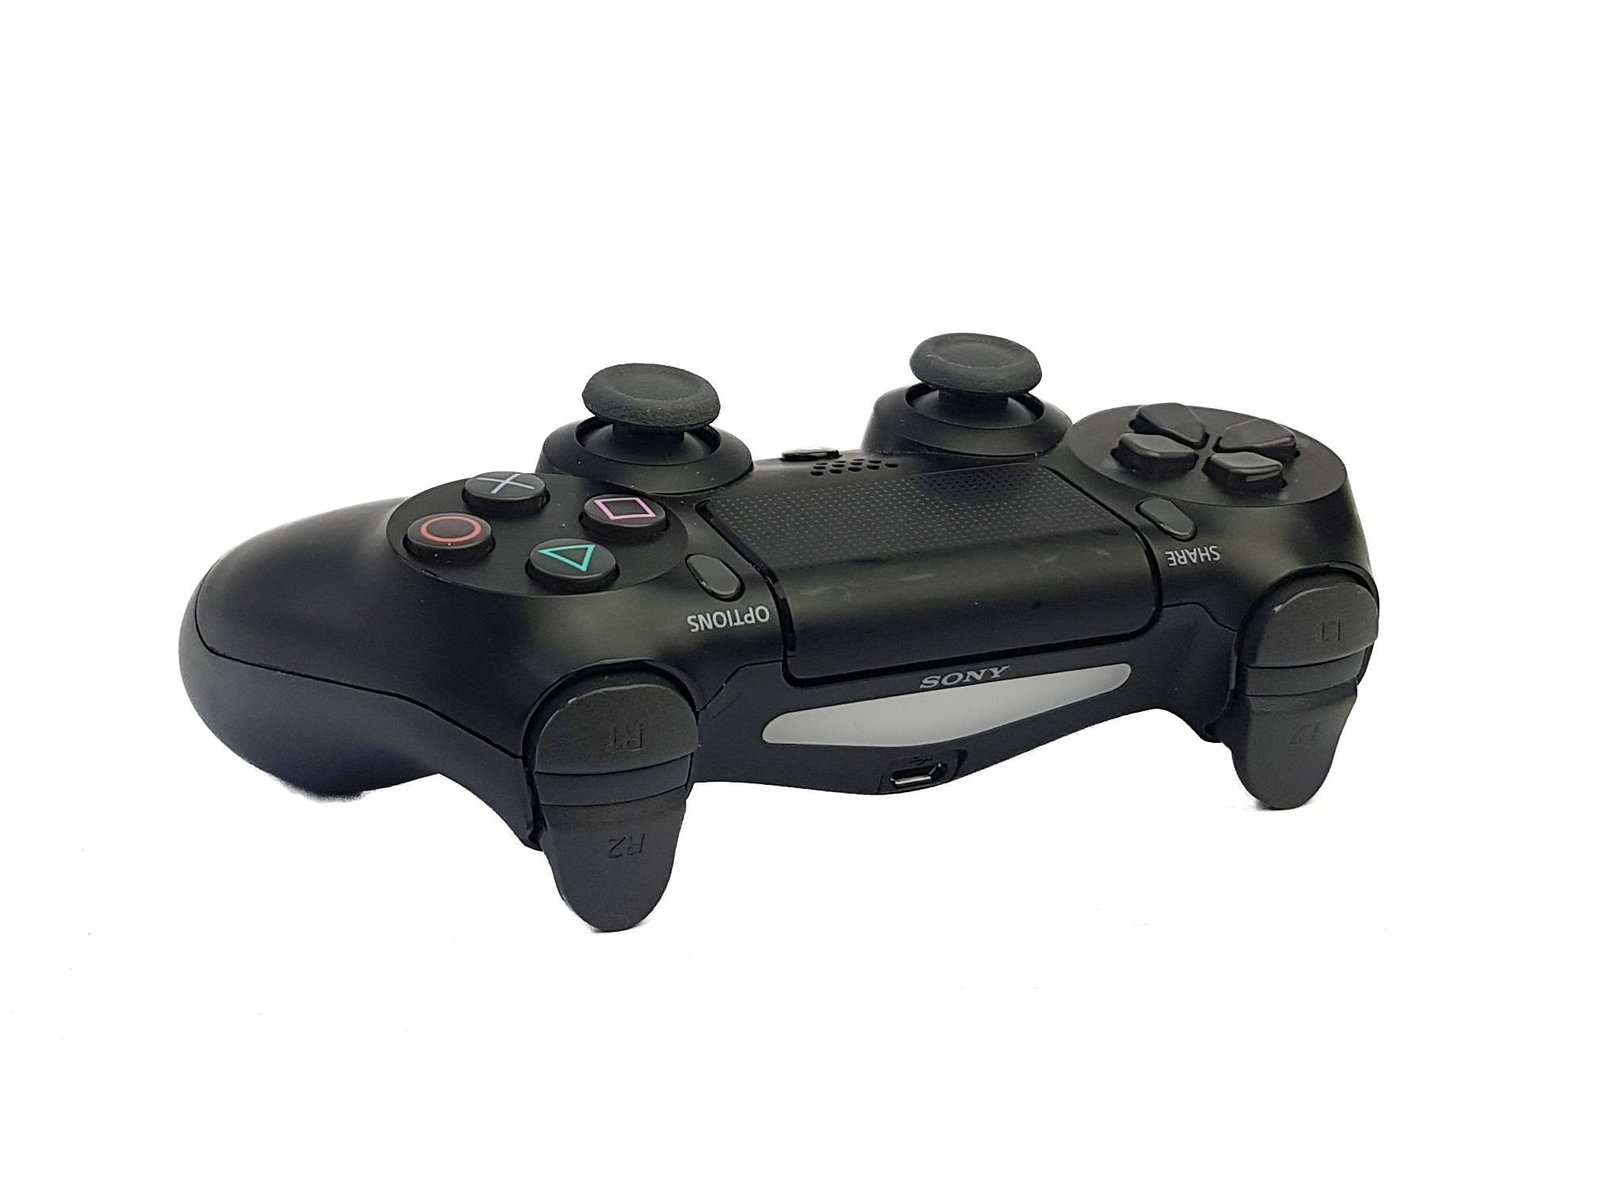 Control joystick inalámbrico Sony PlayStation Dualshock 4 ps4 jet black